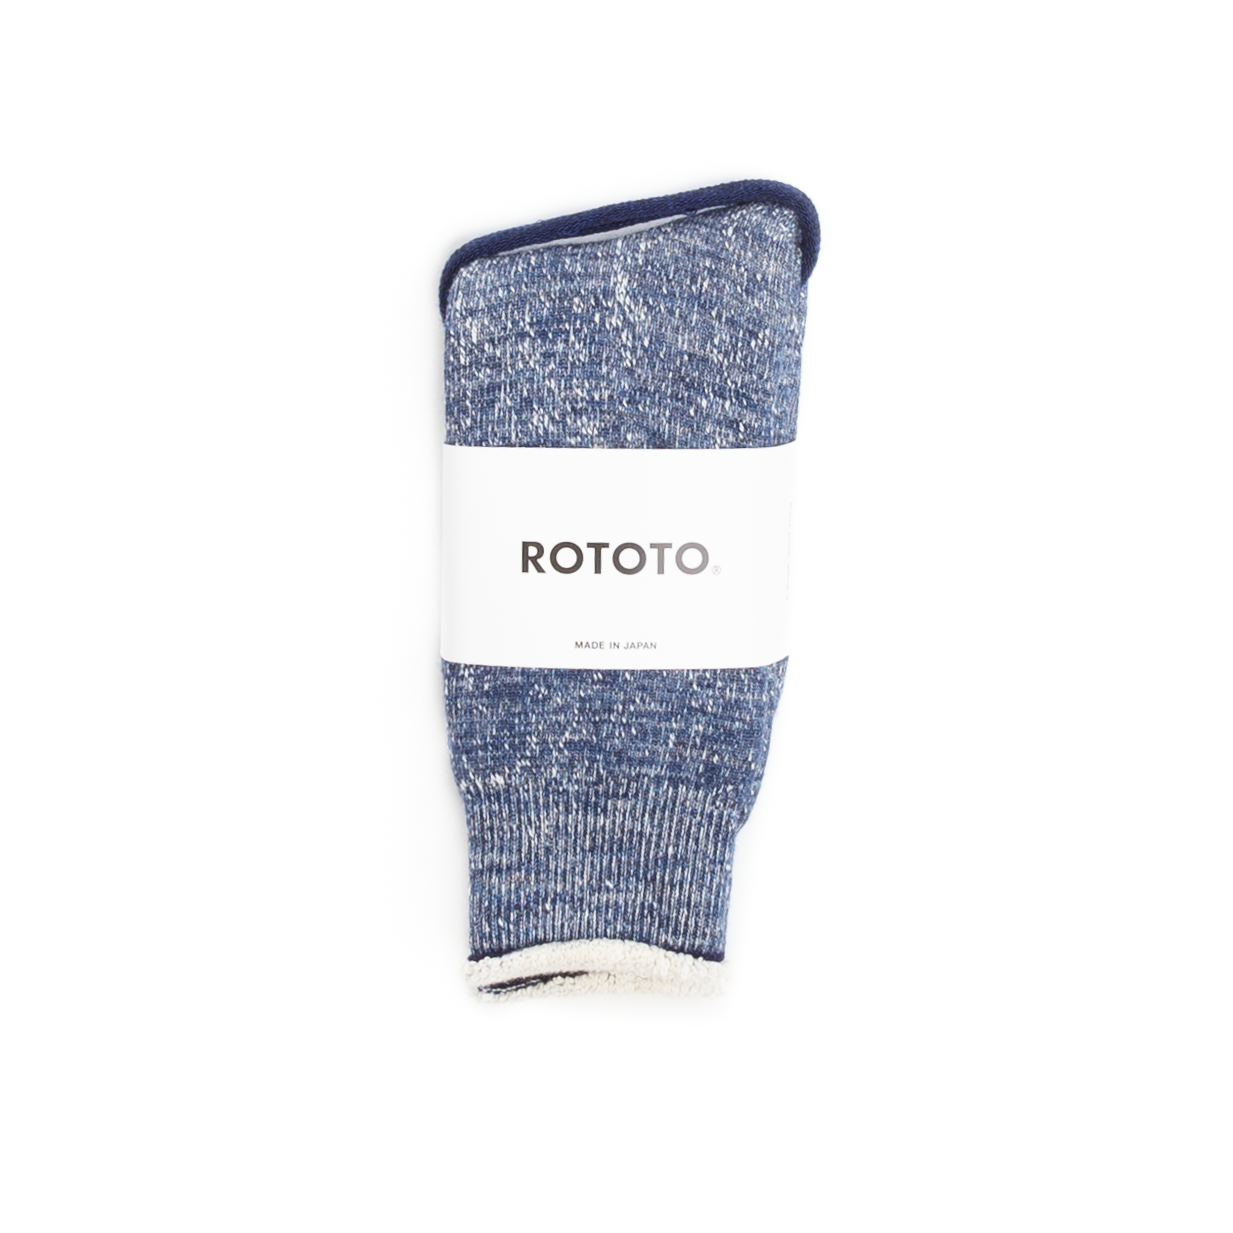 RoToTo Double Face Socks